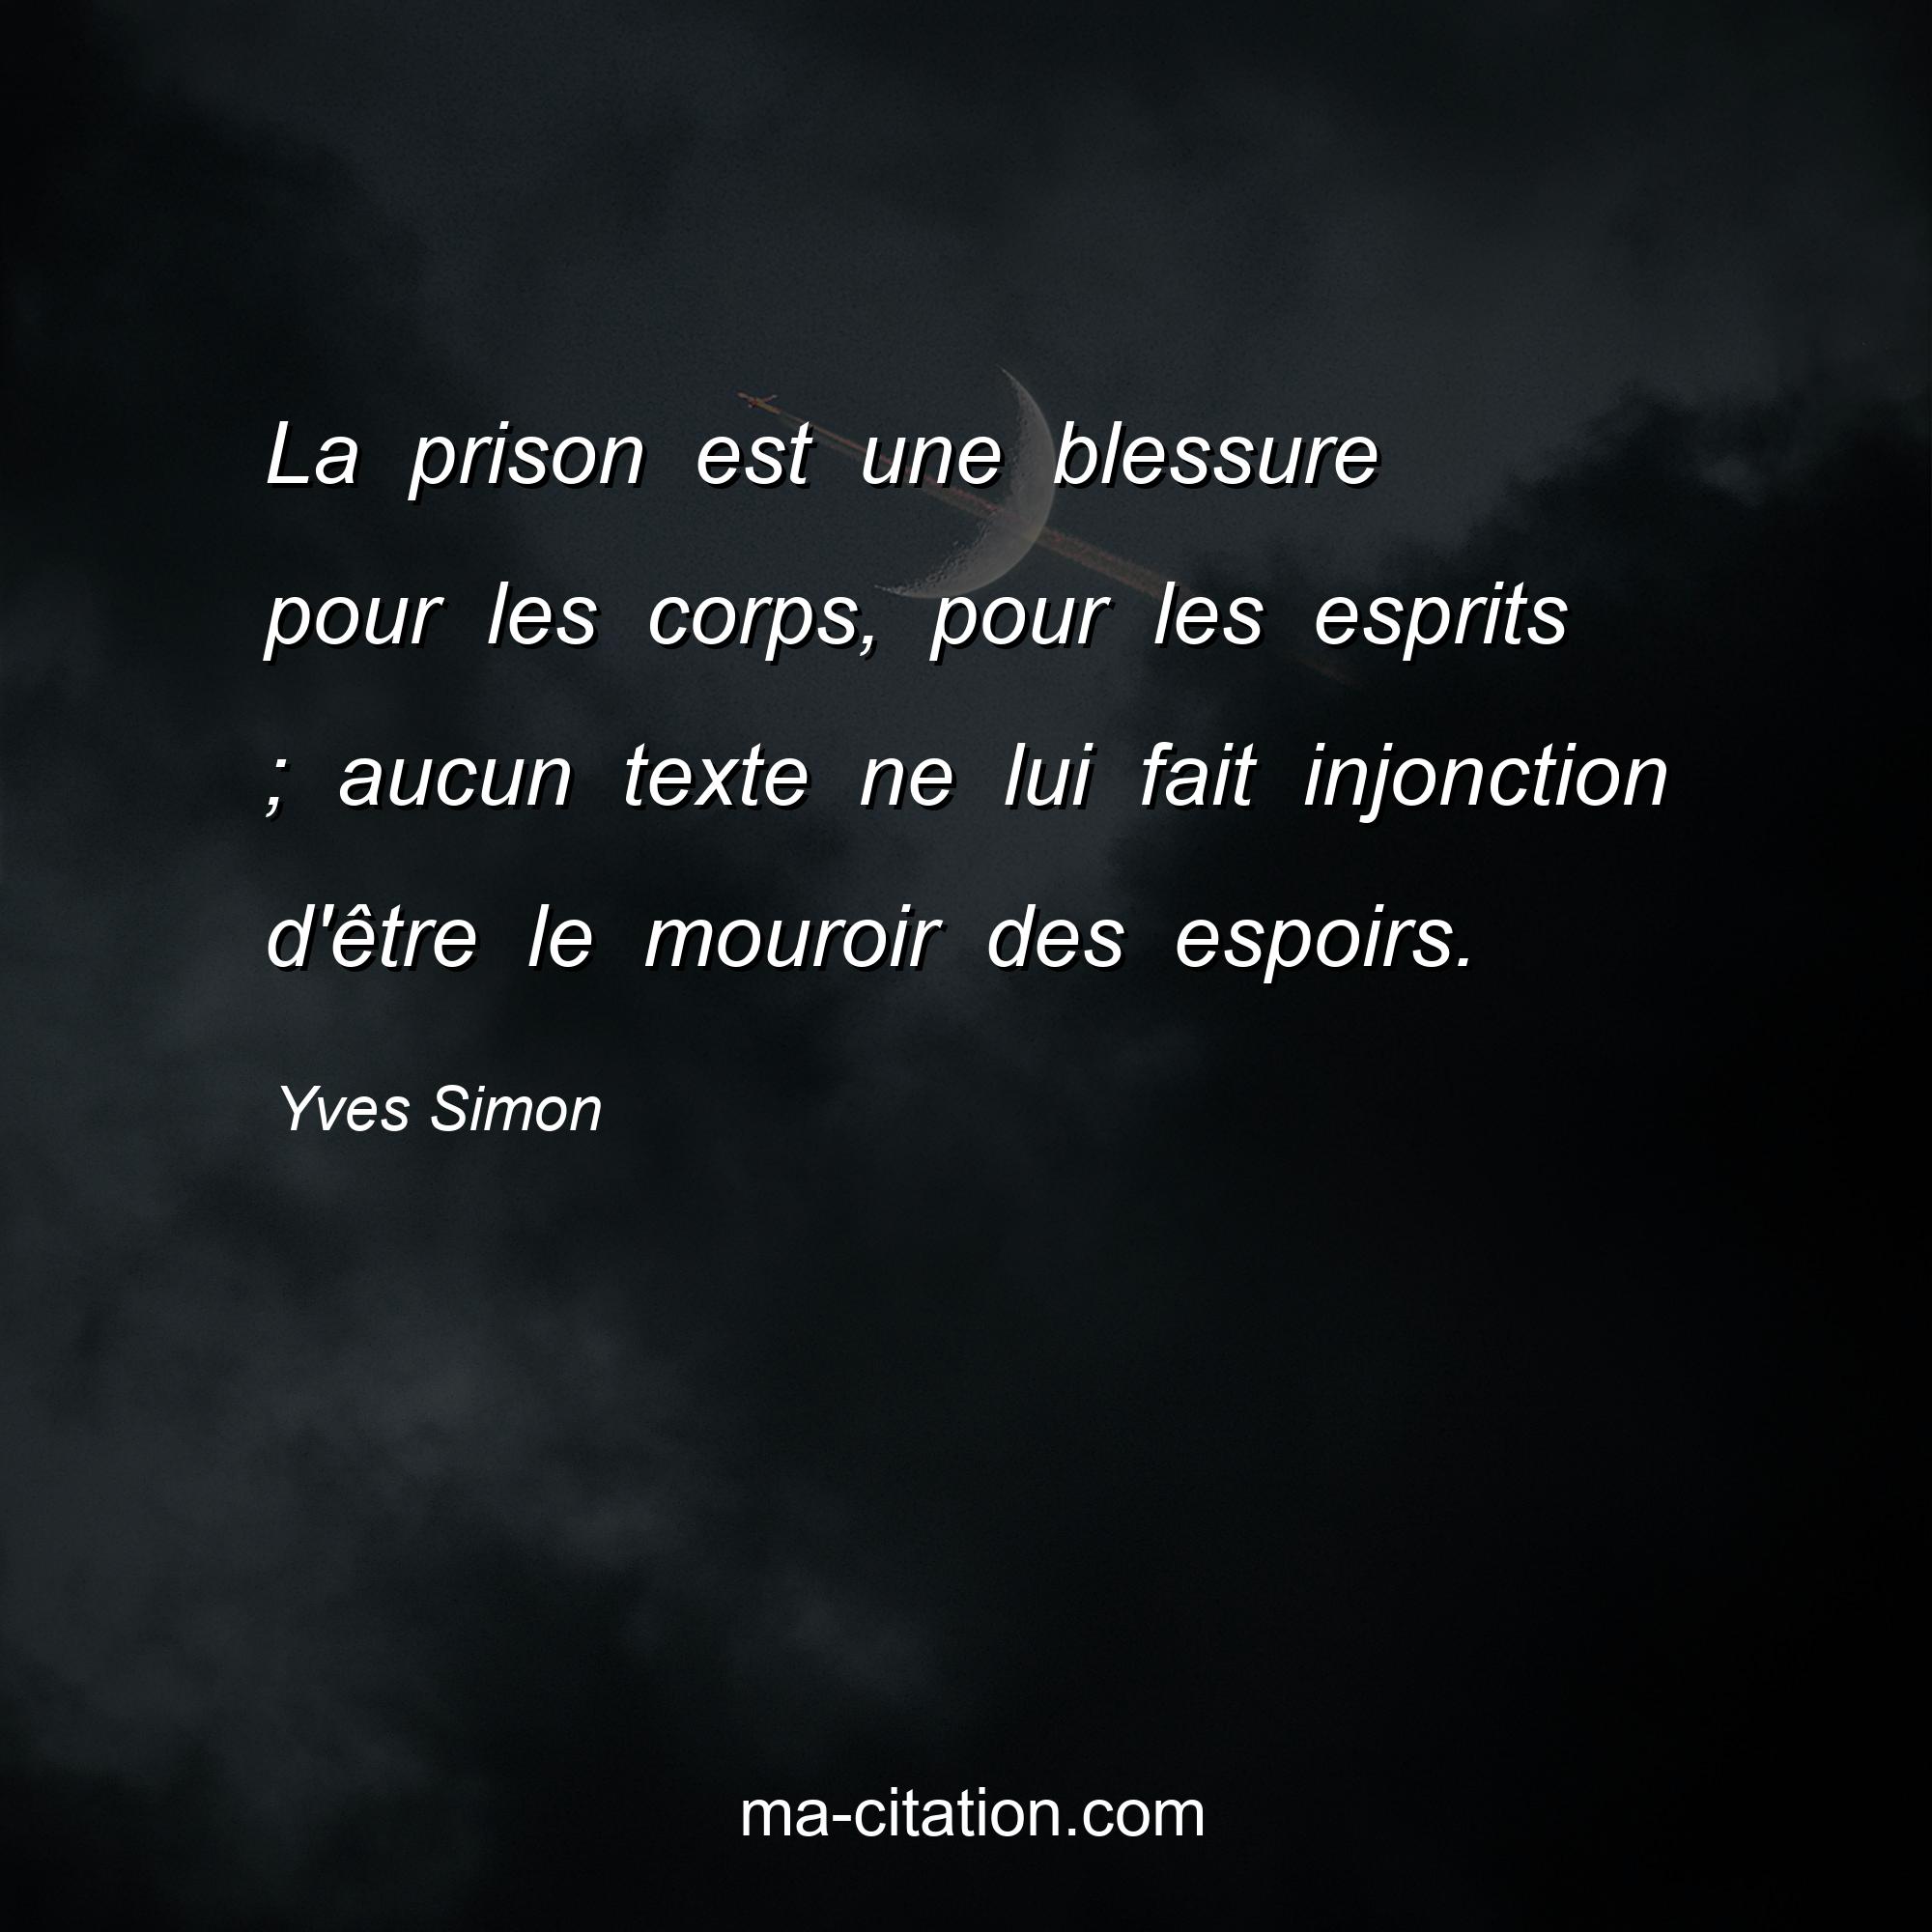 Yves Simon : La prison est une blessure pour les corps, pour les esprits ; aucun texte ne lui fait injonction d'être le mouroir des espoirs.